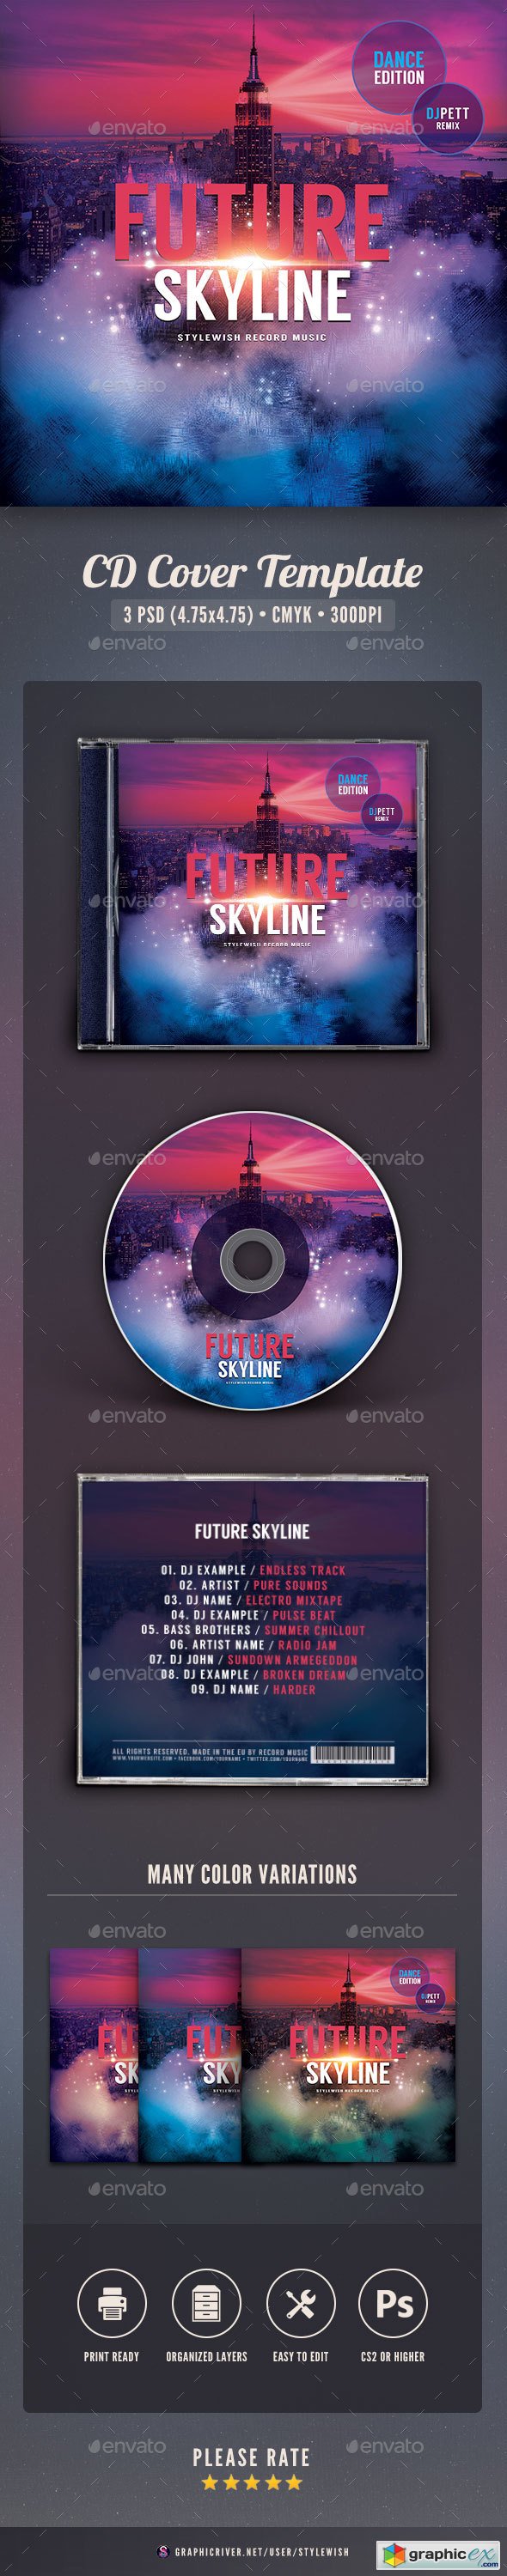 Future Skyline CD Cover Artwork